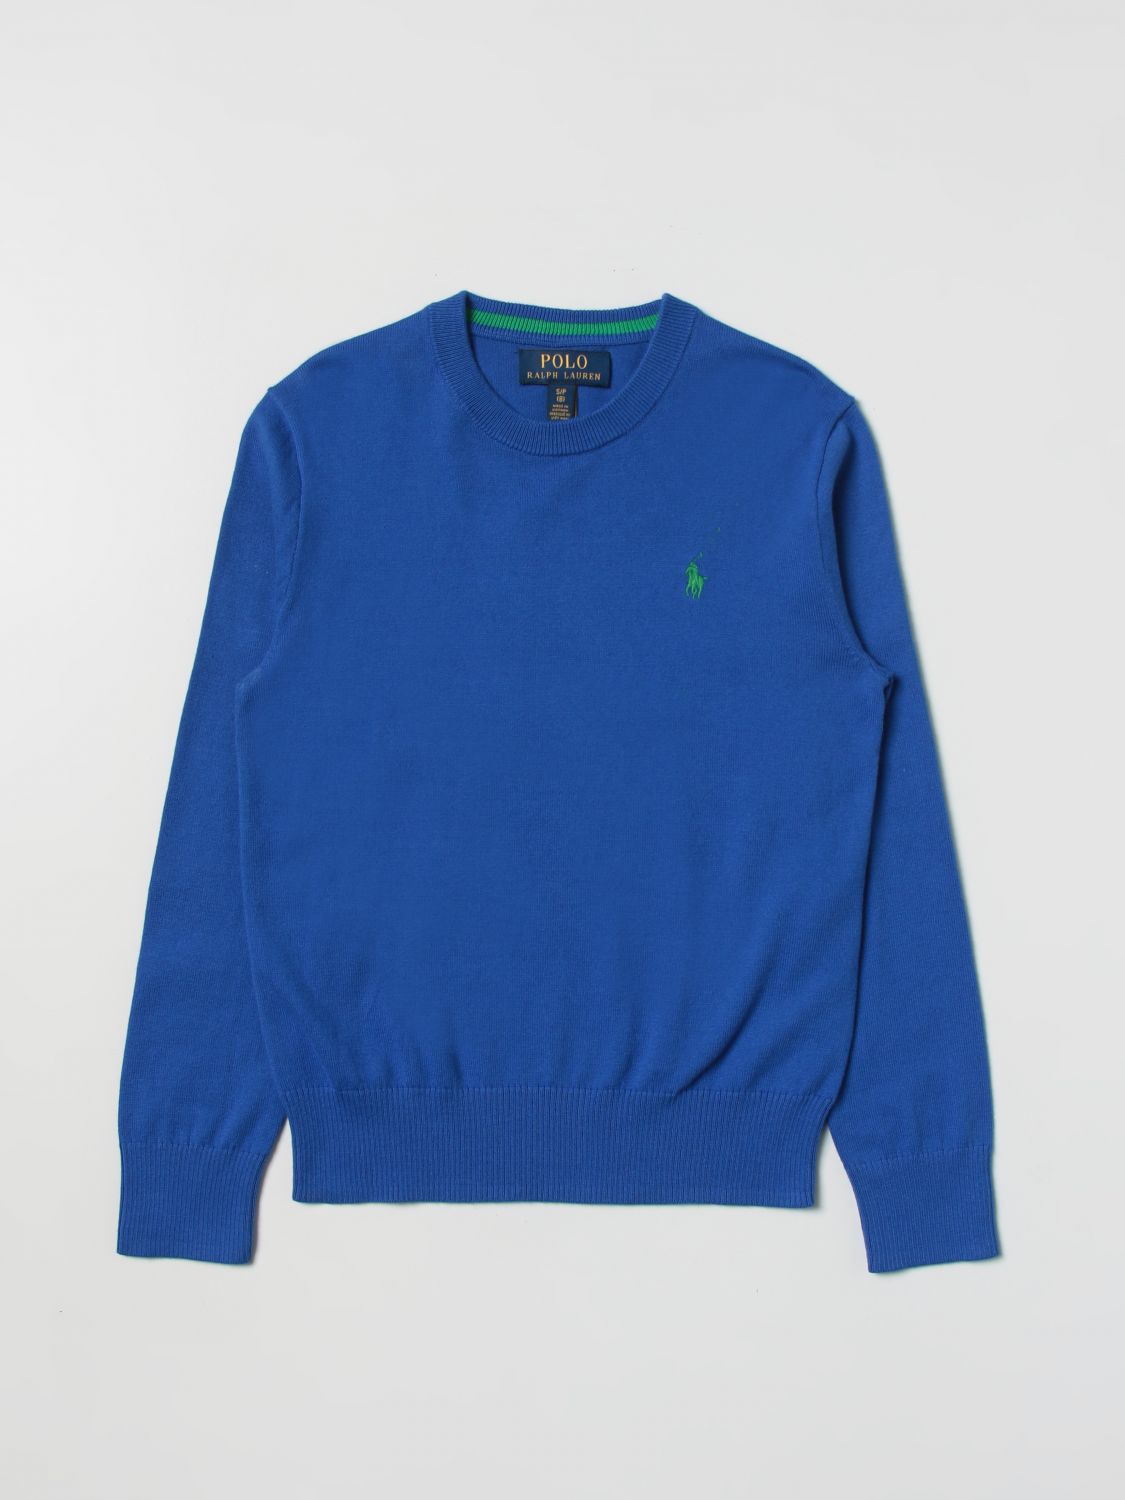 Polo Ralph Lauren Sweater  Kids Color Royal Blue